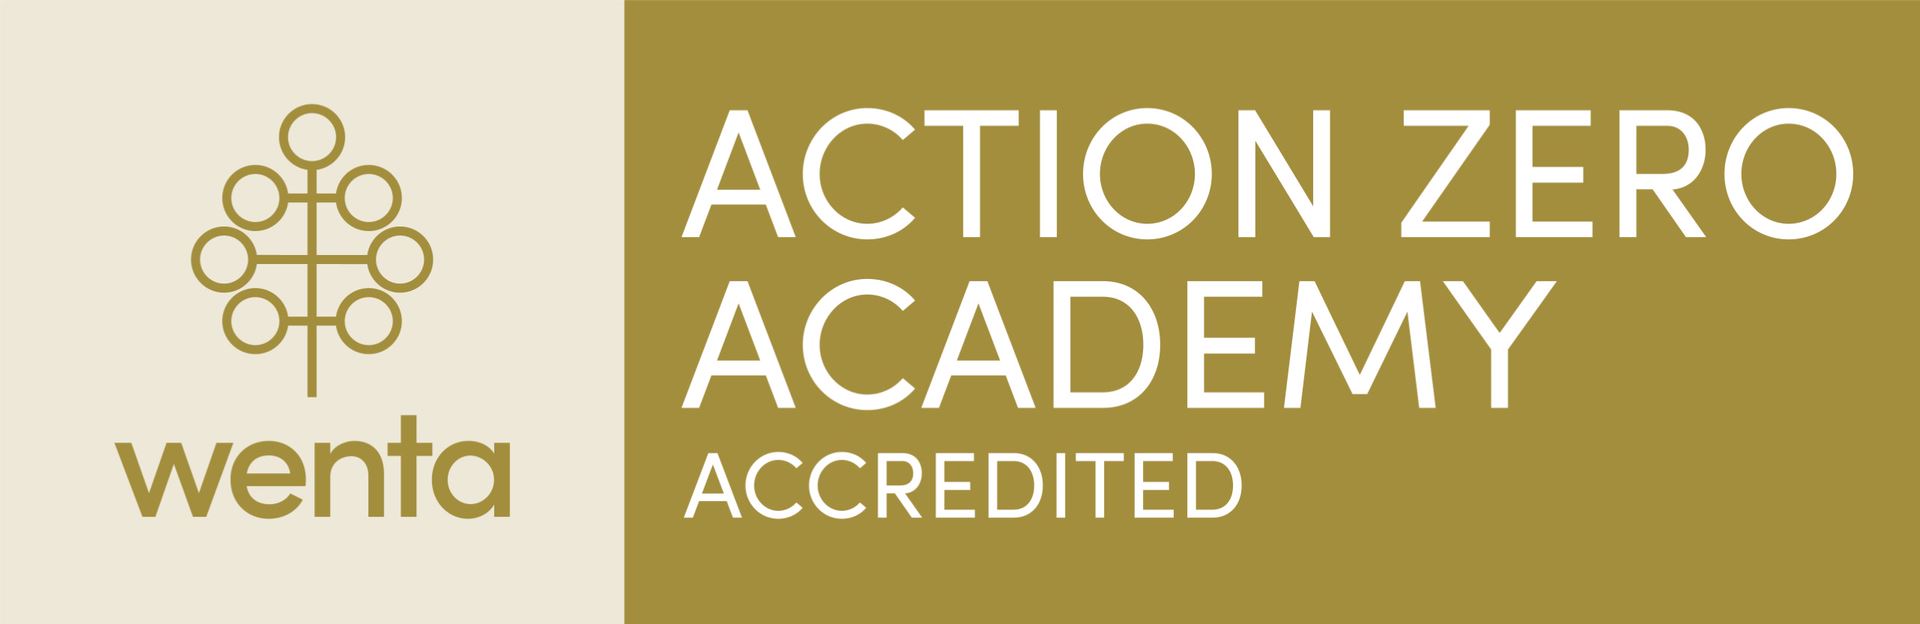 Action Zero Academy